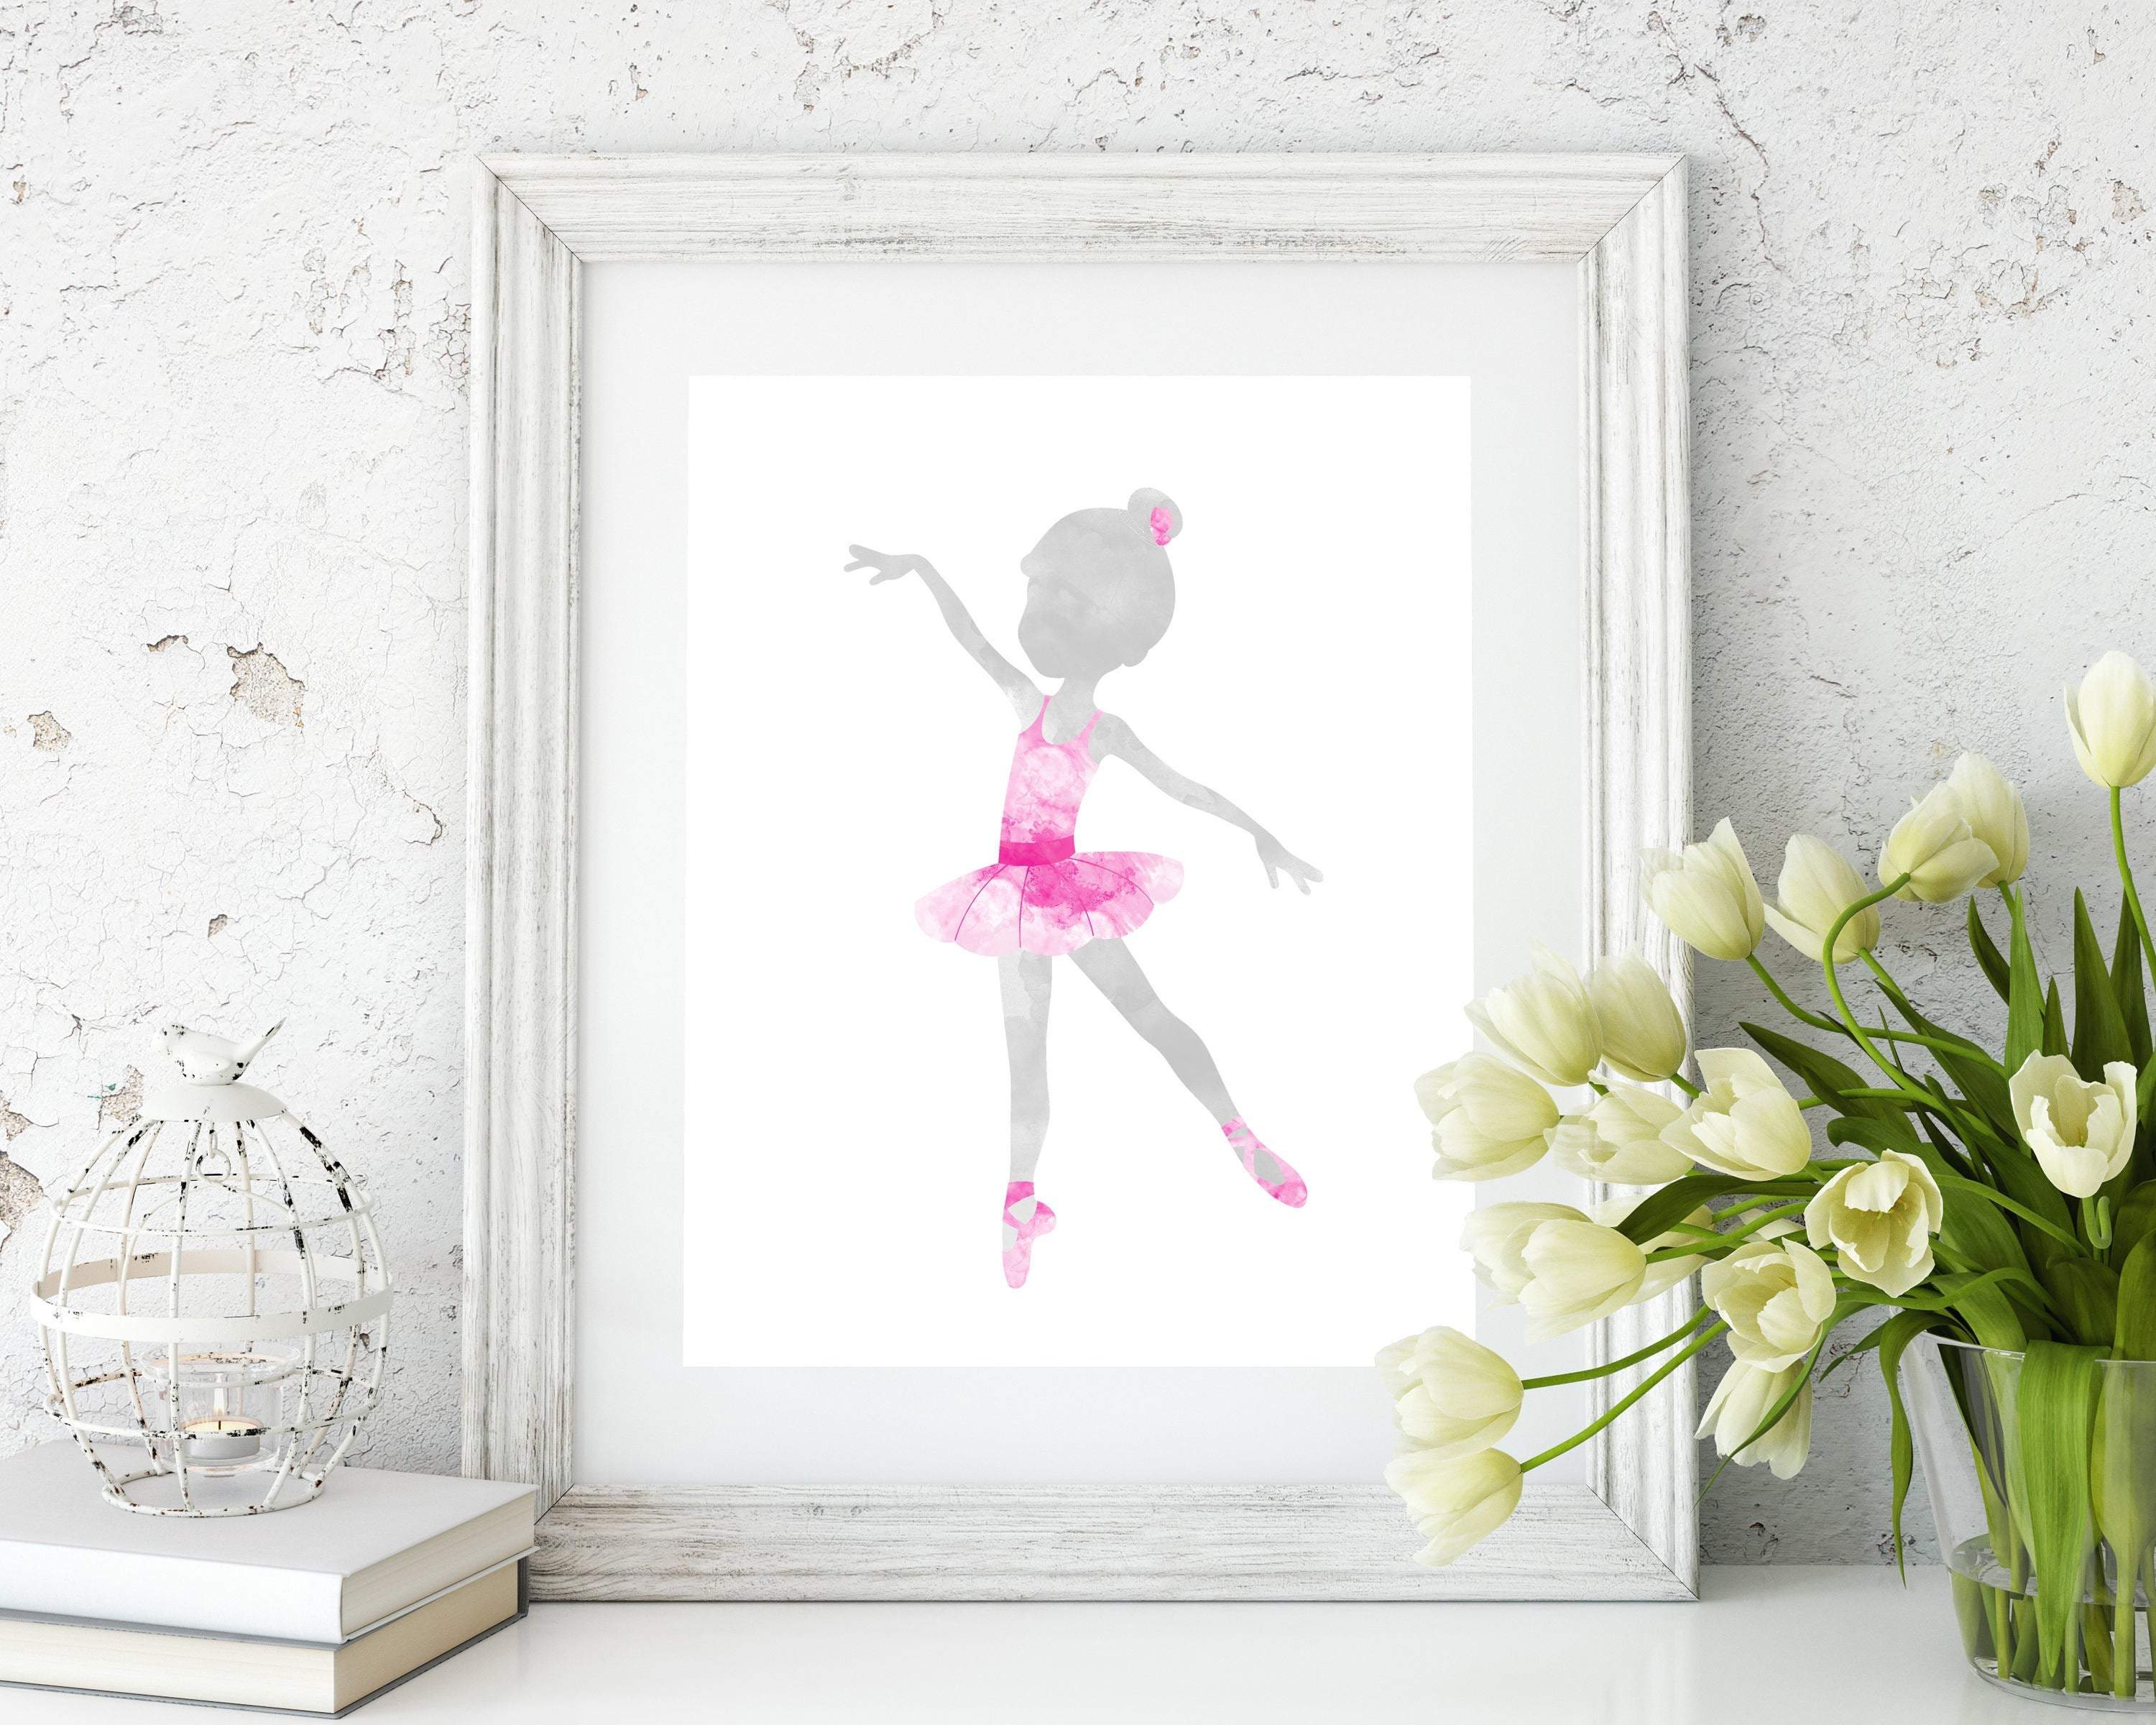 Ballerina Wall Art, Pink Ballerina Art Print in watercolor, Girls Ballet dancer nursery art print baby nursery bedroom decor